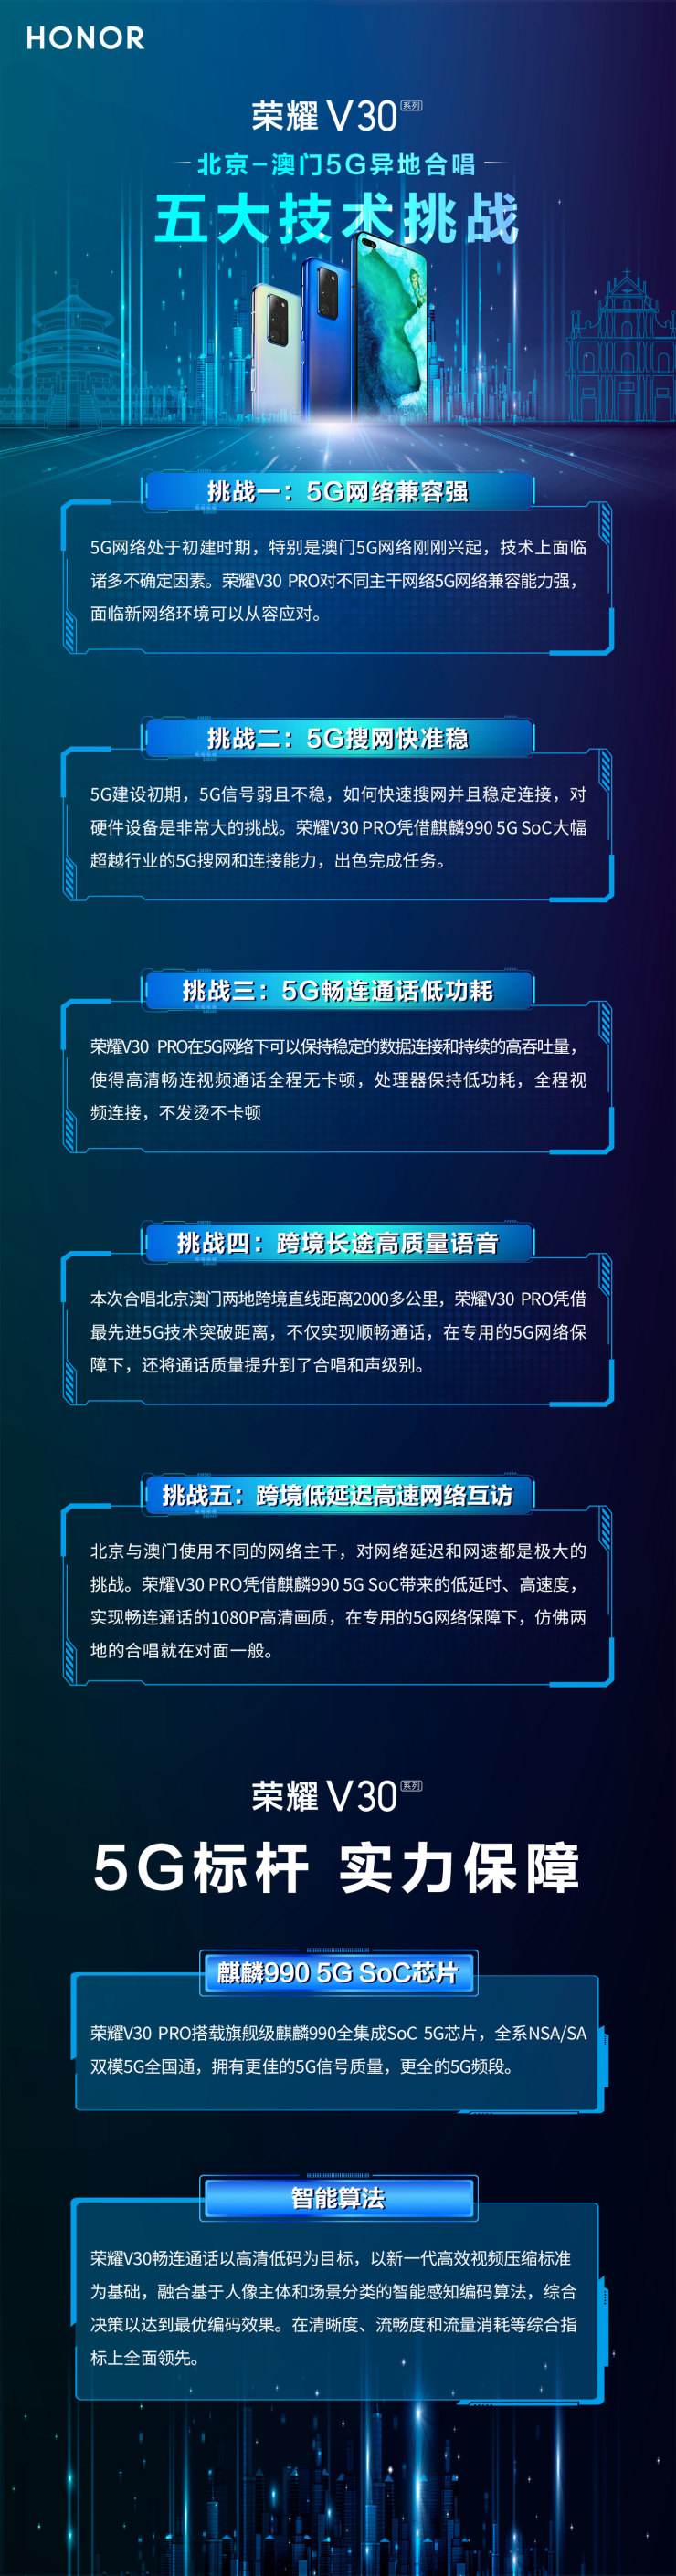 荣耀V30官微揭秘人民日报北京澳门5G合唱幕后技术(图5)